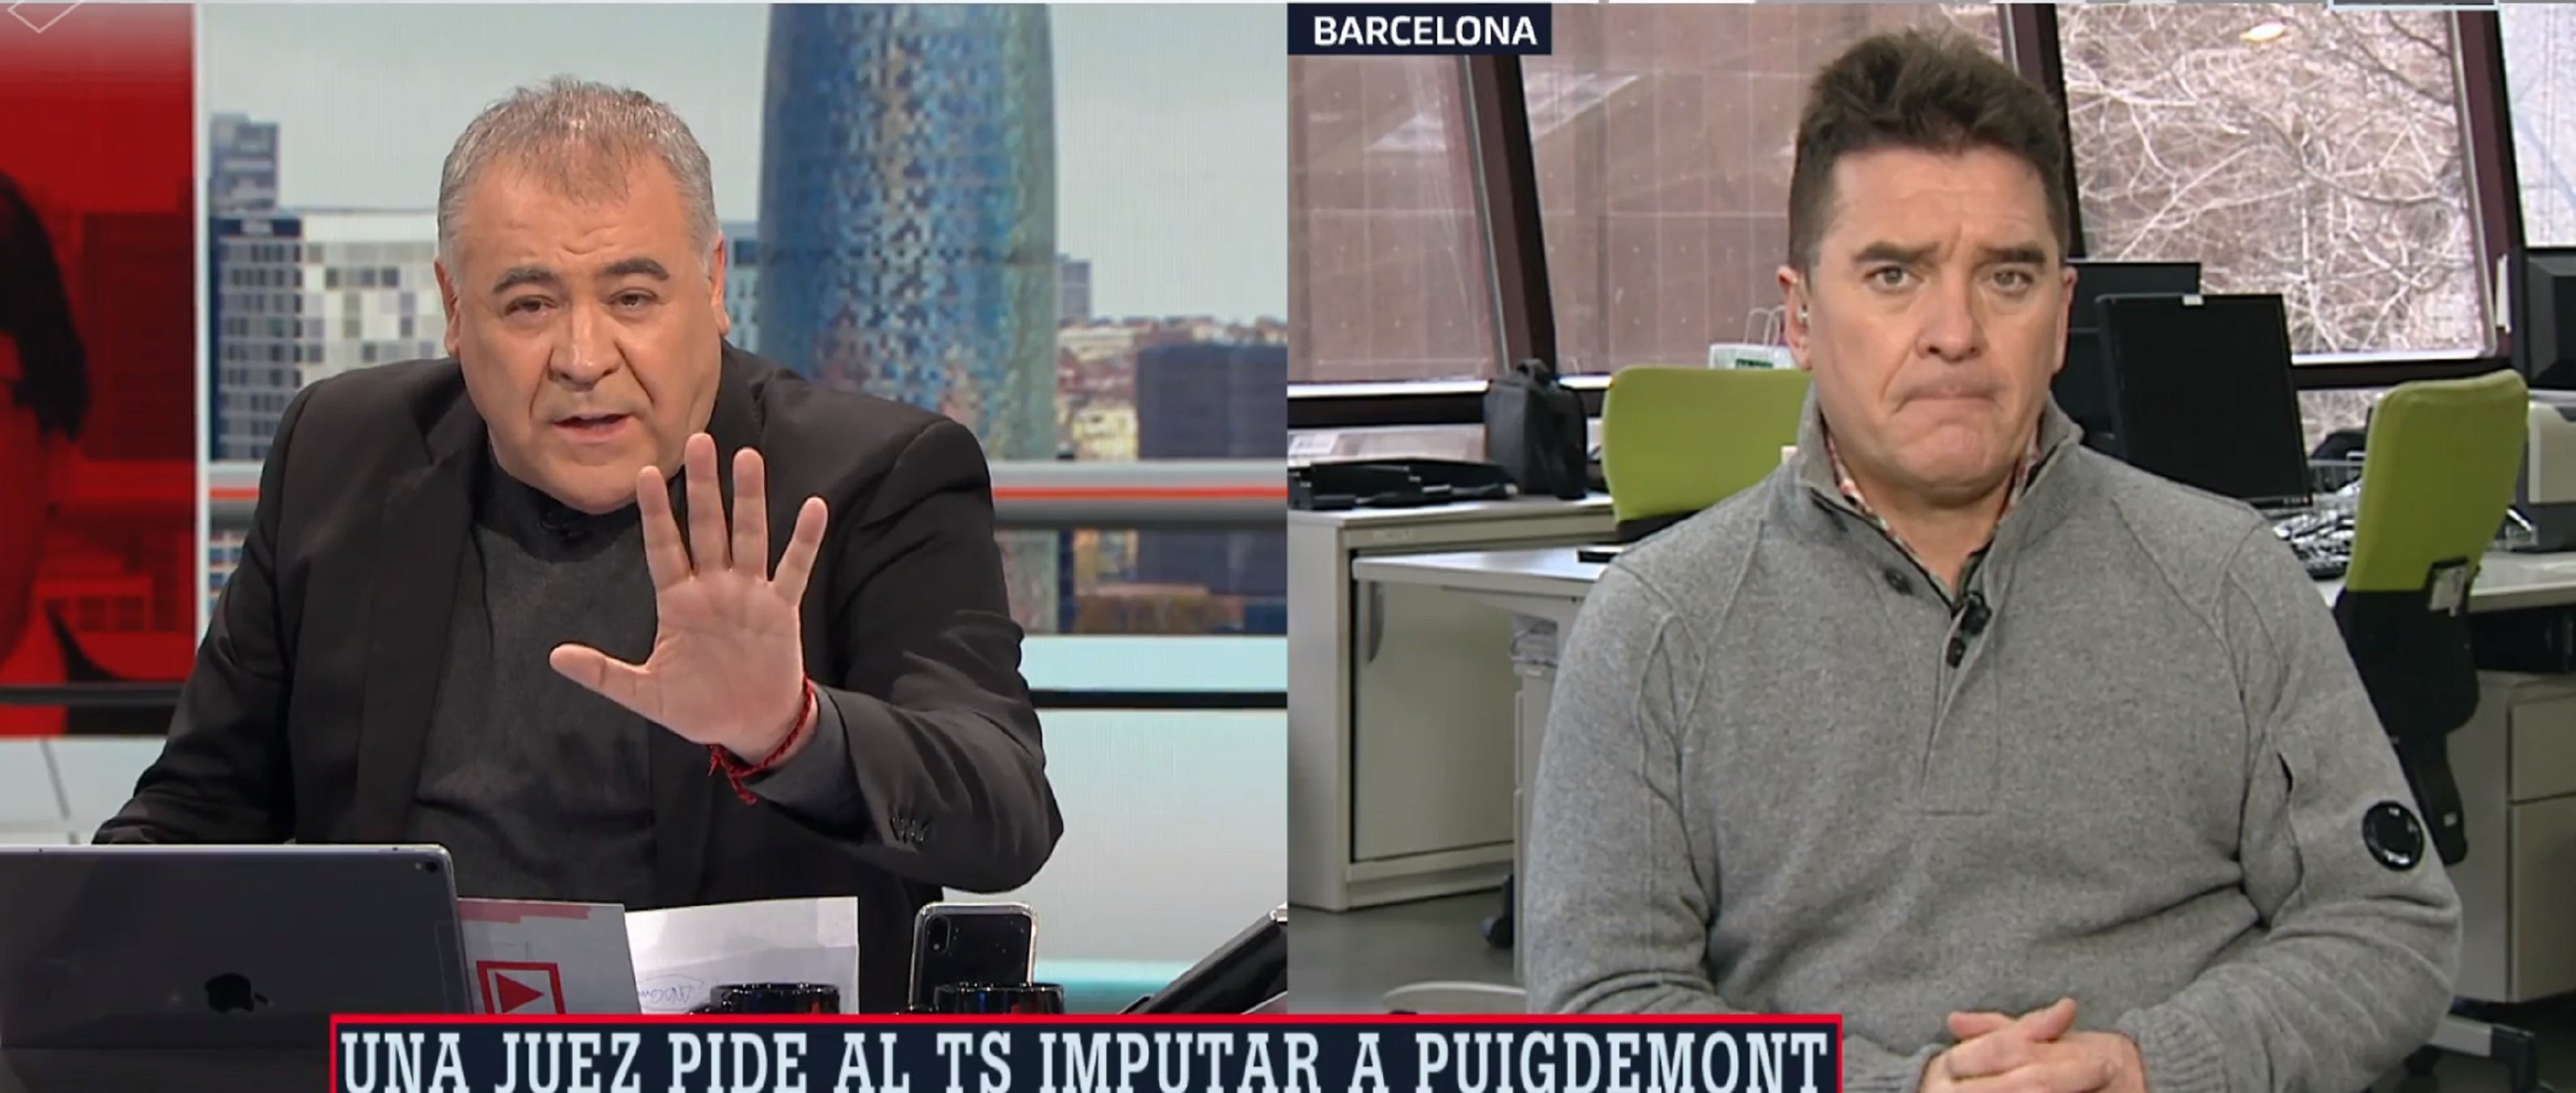 Ferreras y Quílez, desesperados: "Extraditaremos a Puigdemont por corrupción"